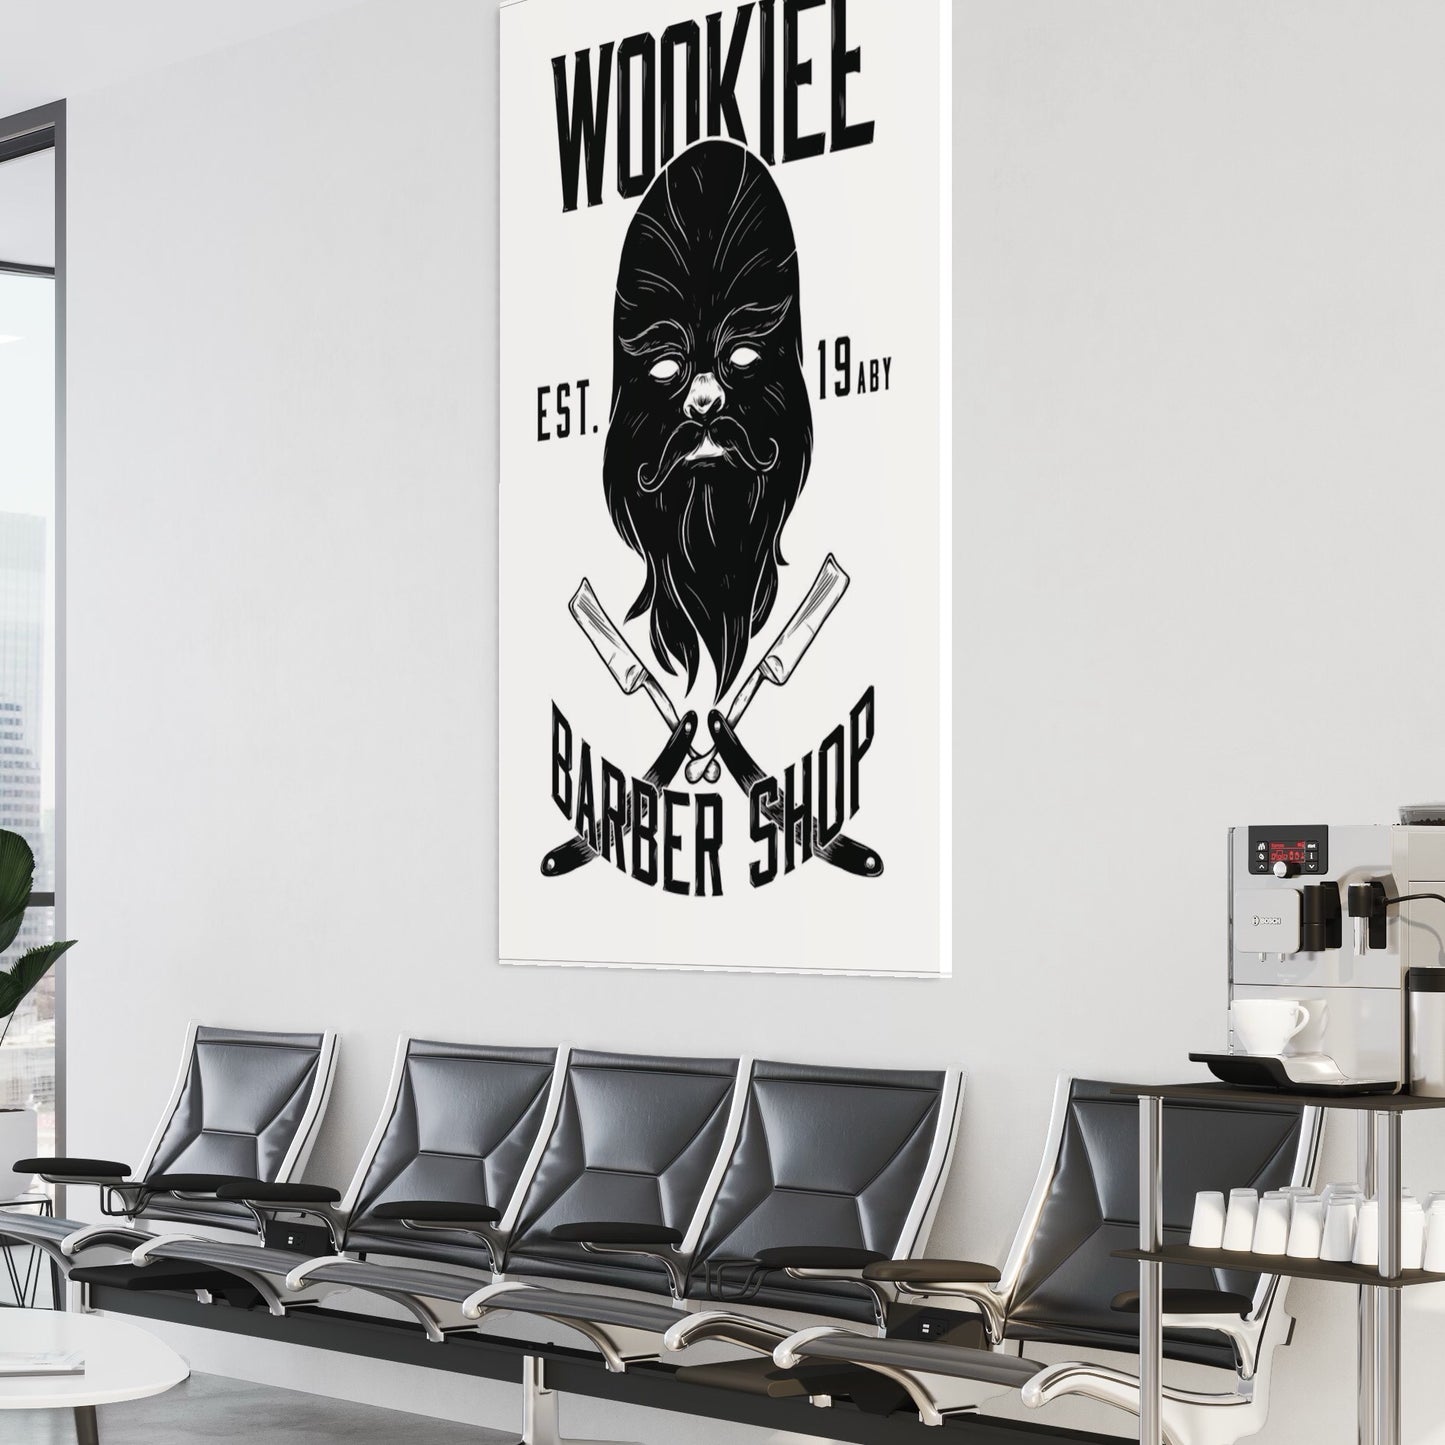 Wookiee Barber Shop